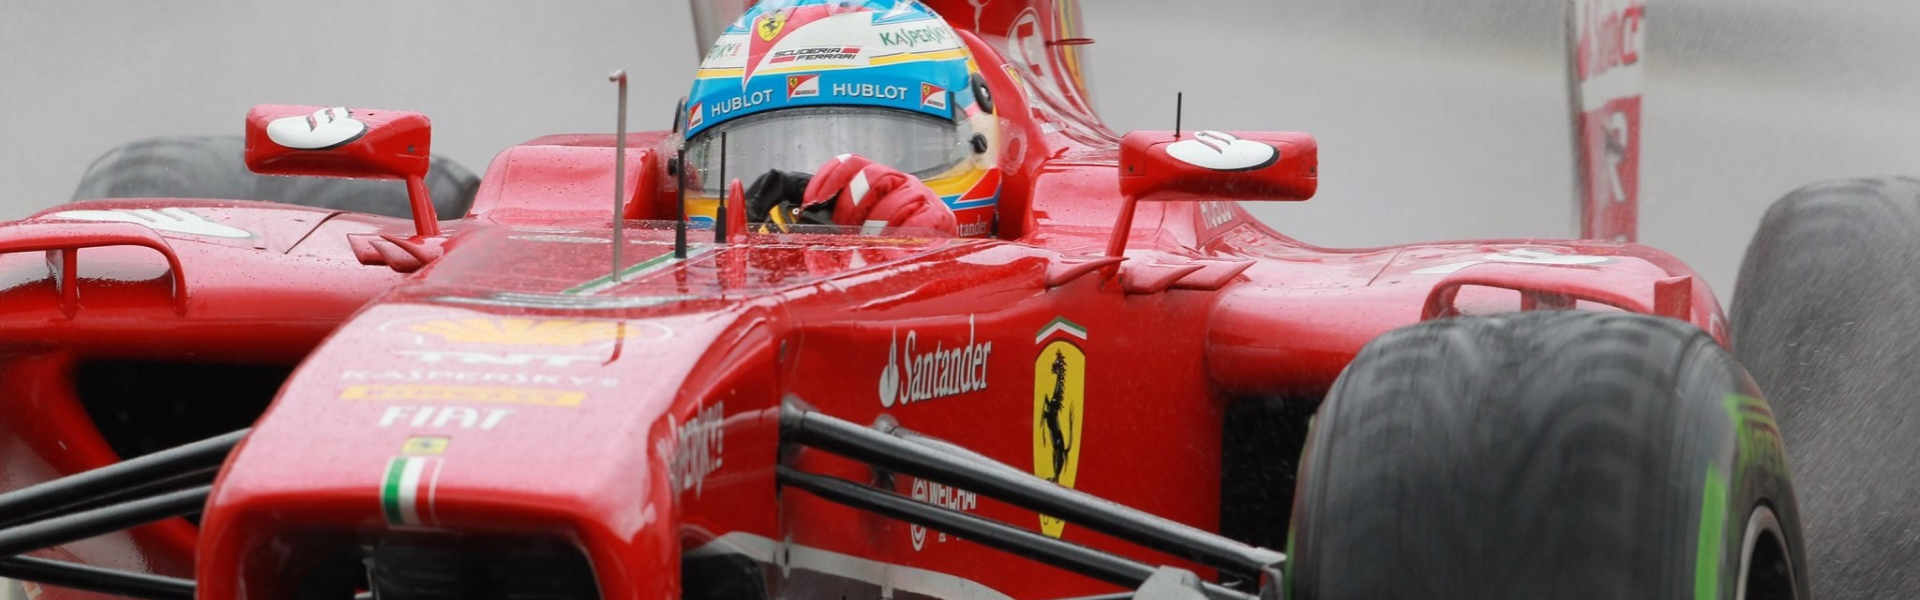 Ferrari, Fórmula 1 e a transição para um desporto mais ecológico